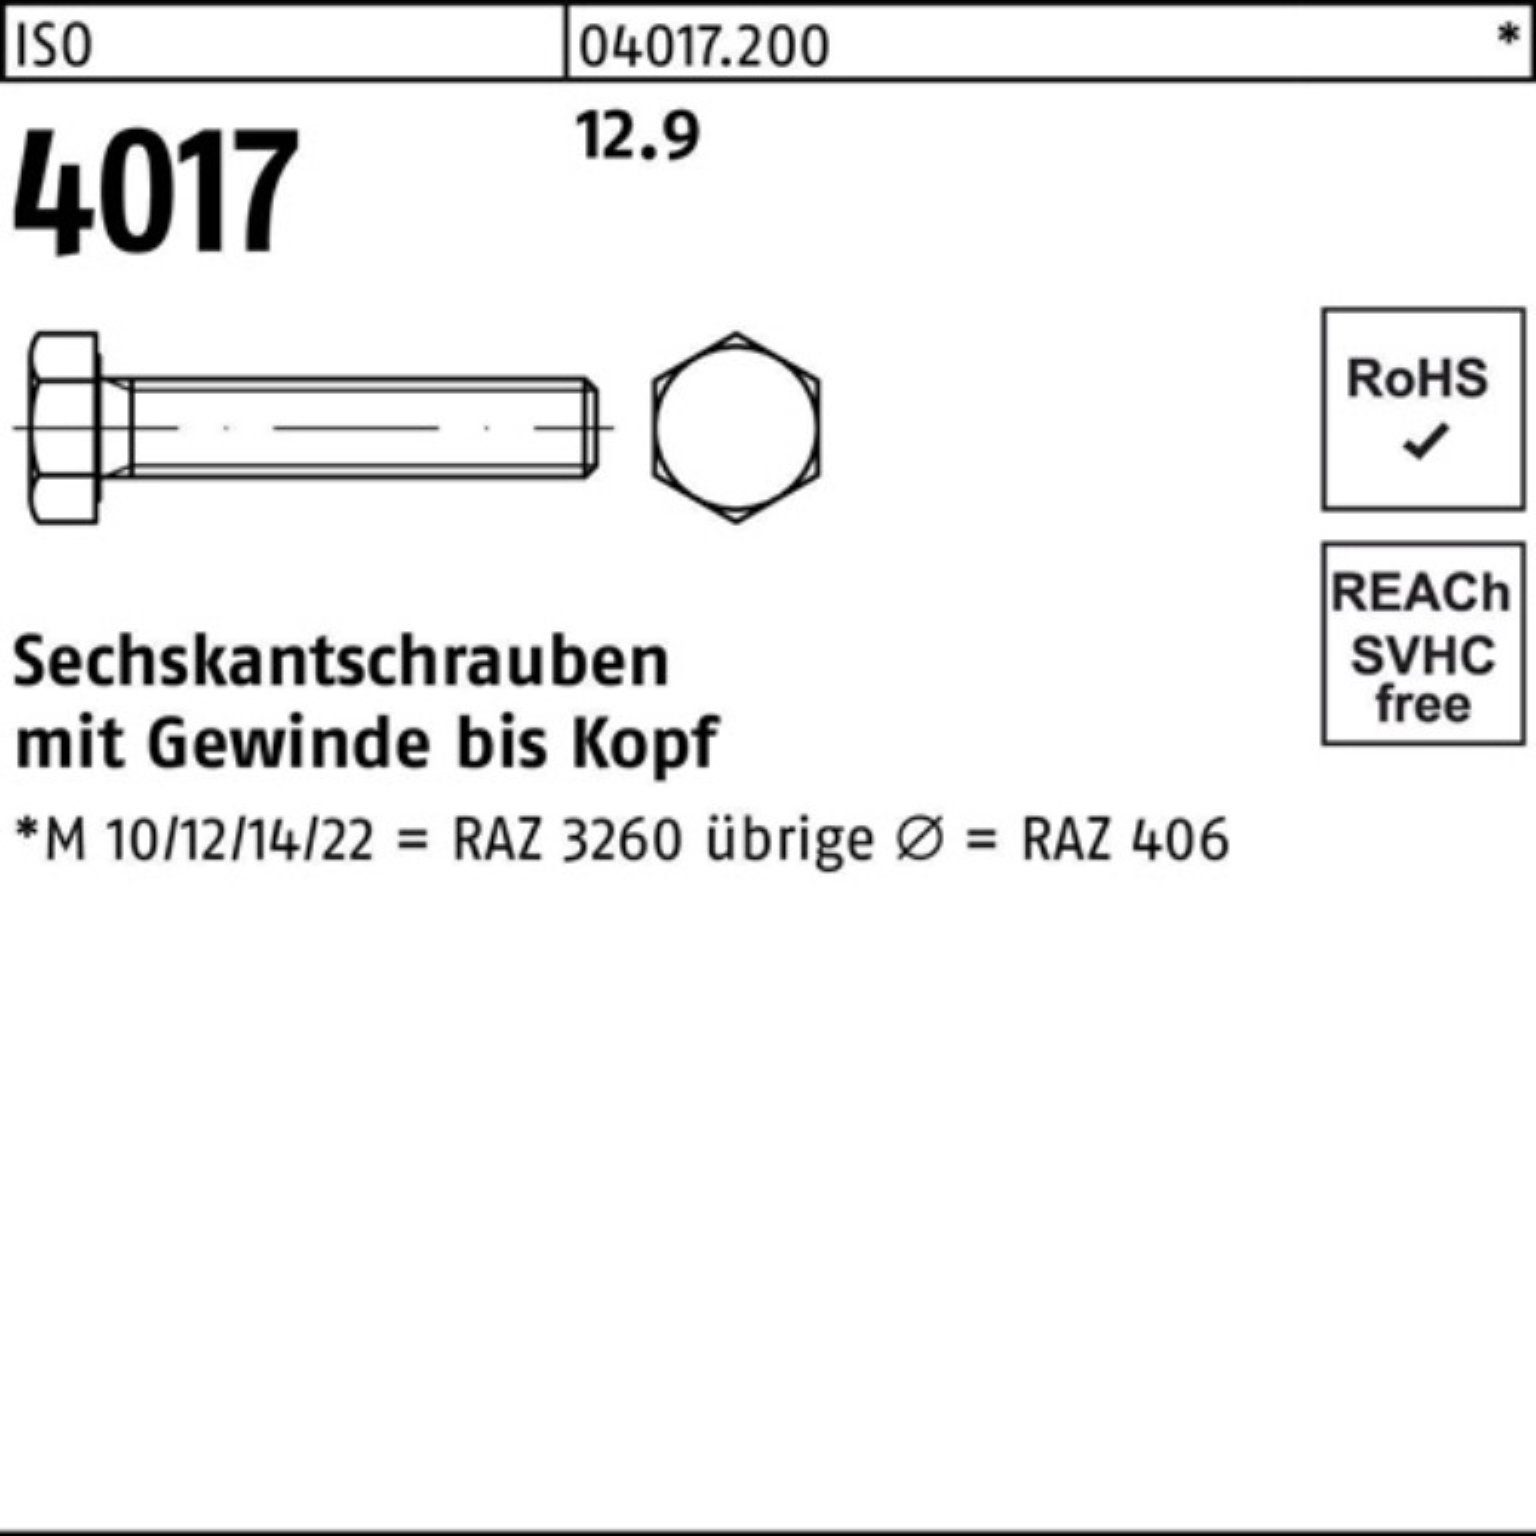 Bufab Sechskantschraube VG ISO 25 Sechskantschraube 12.9 4017 Stück Pack M20x 40 100er ISO 55